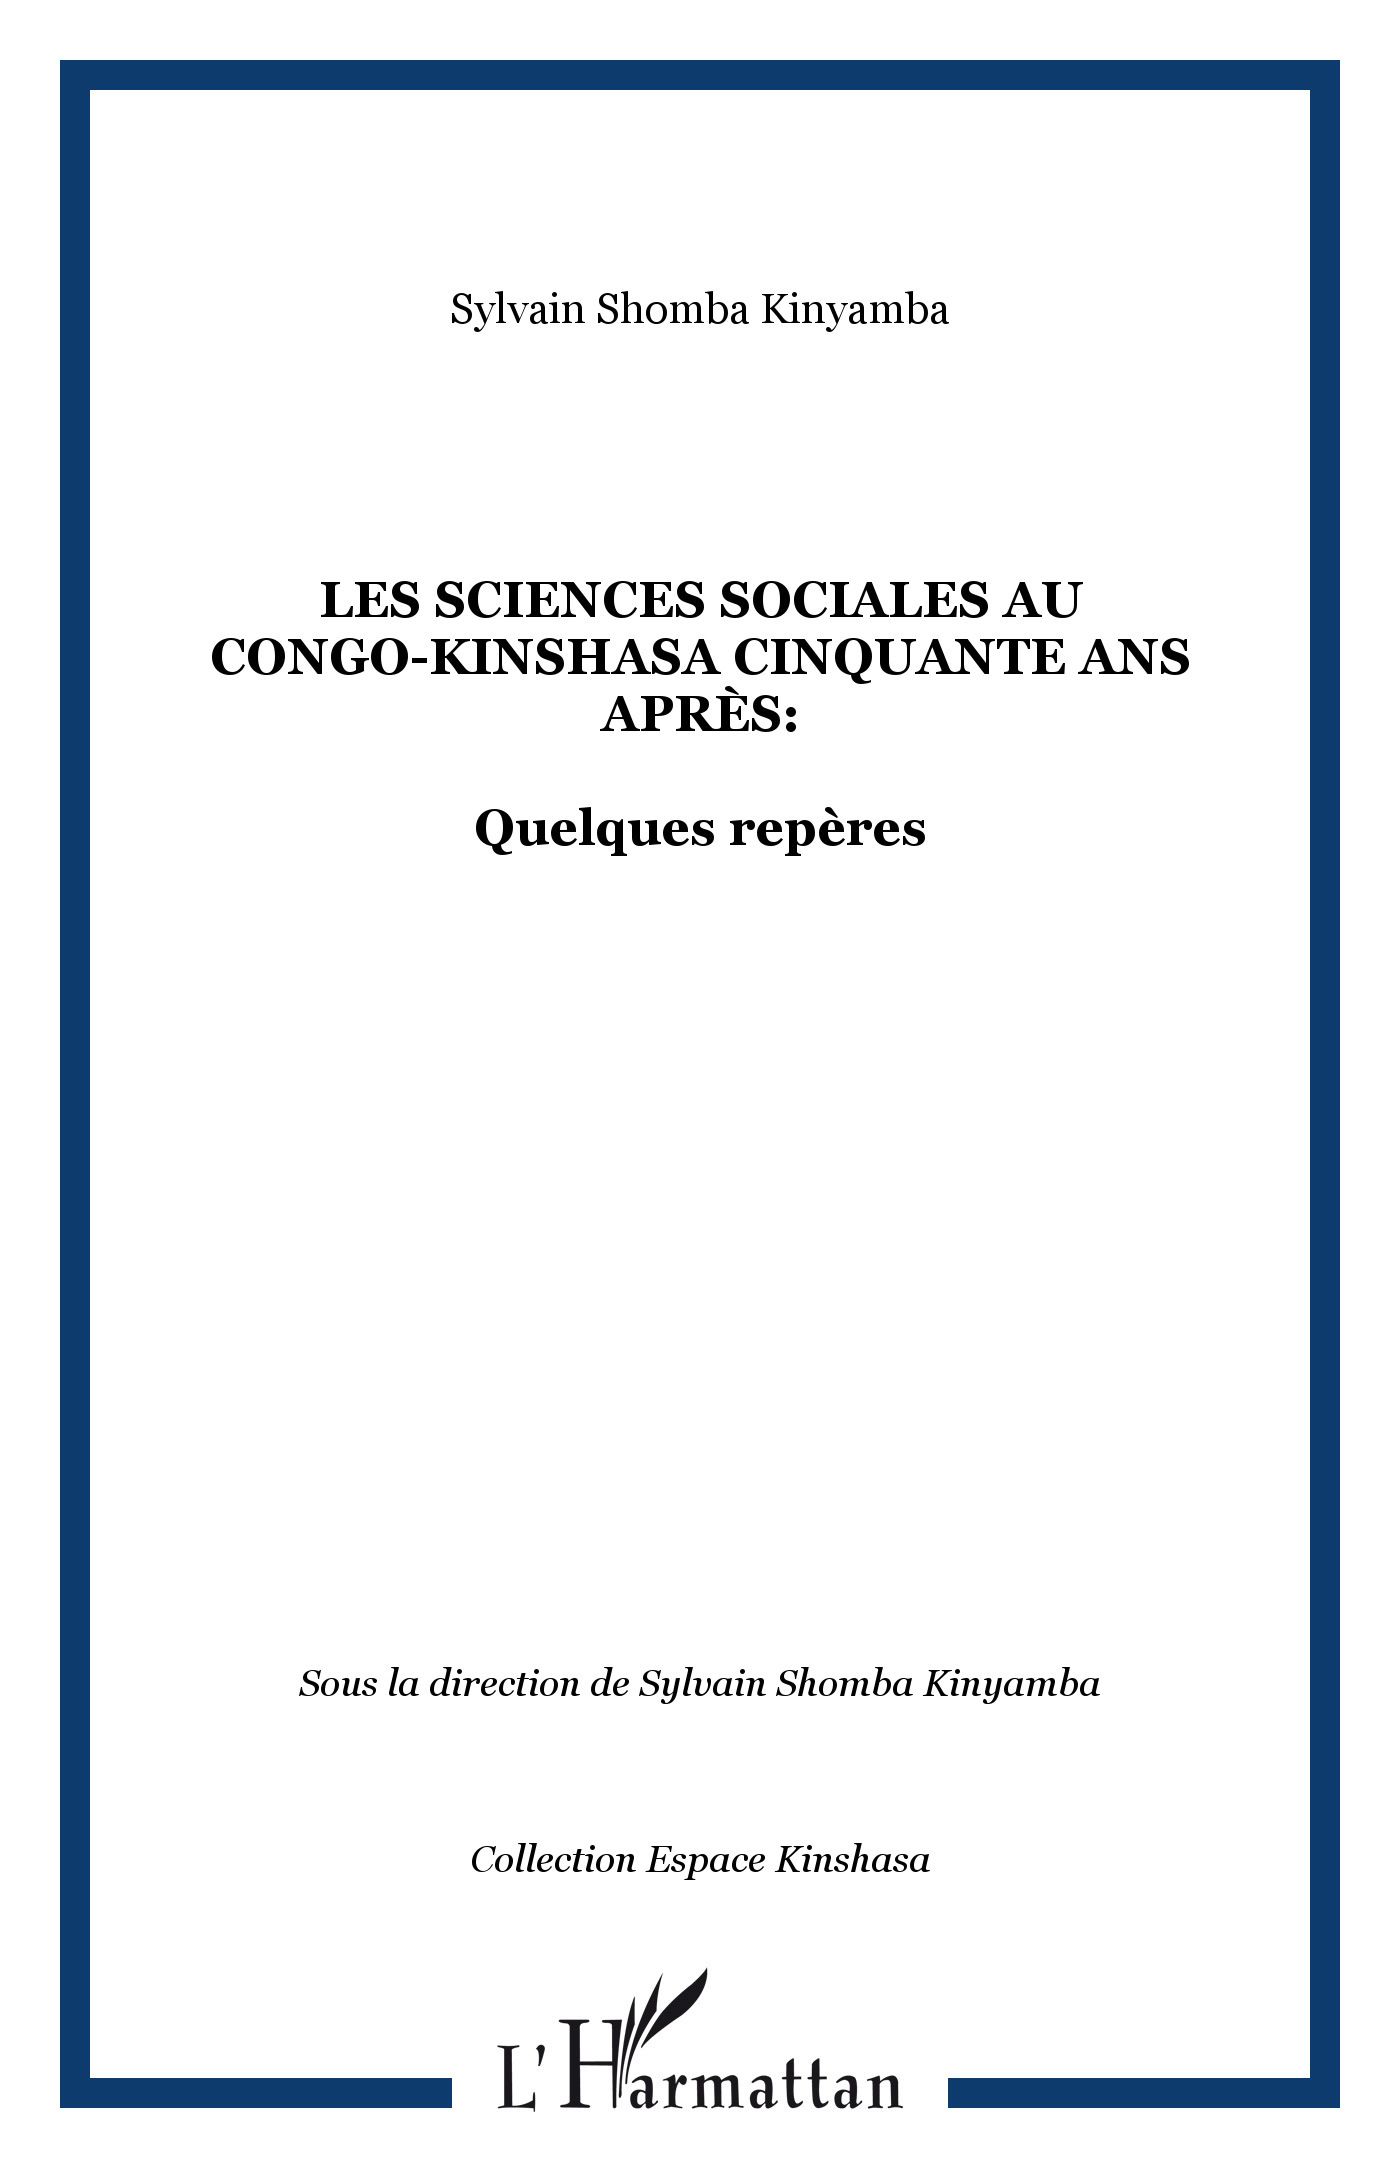 Les sciences sociales au Congo-Kinshasa cinquante ans après:, Quelques repères (9782747597302-front-cover)